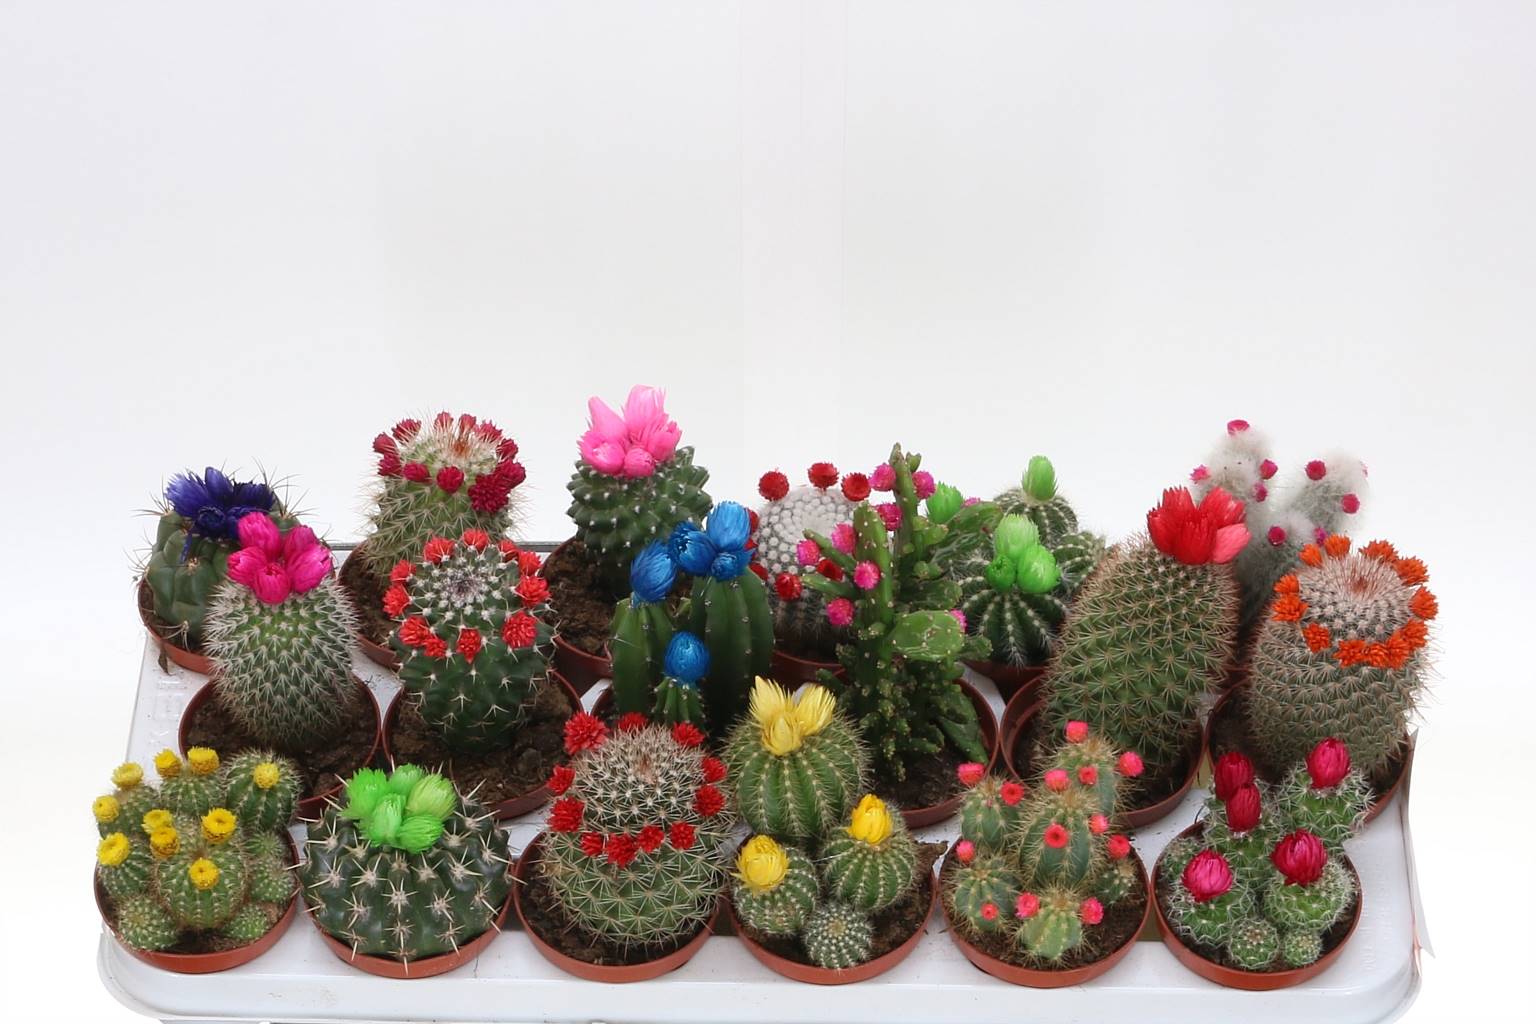 Кактус Украшенный ( Cactus Decorated ) W 8,5 см H 30 см